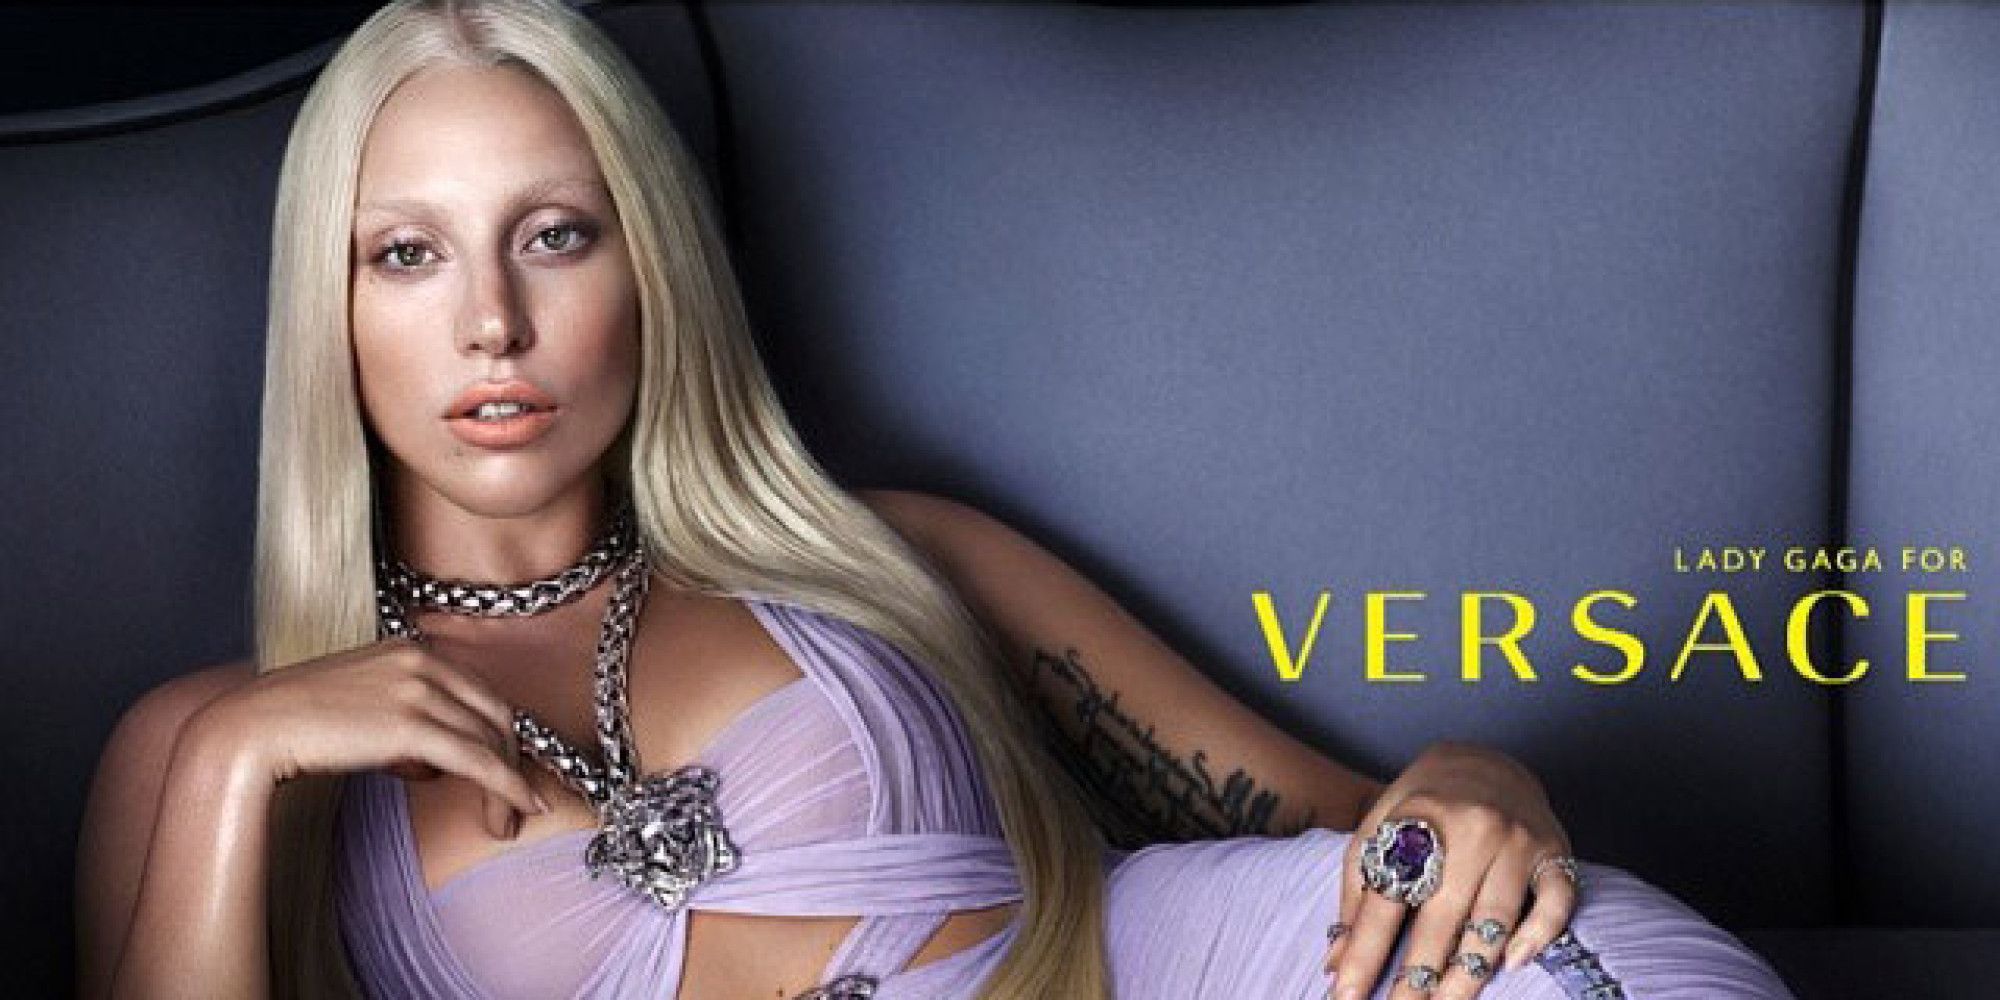 Η Lady Gaga εκτόξευσε τις πωλήσεις του οίκου Versace | Ι LOVE STYLE